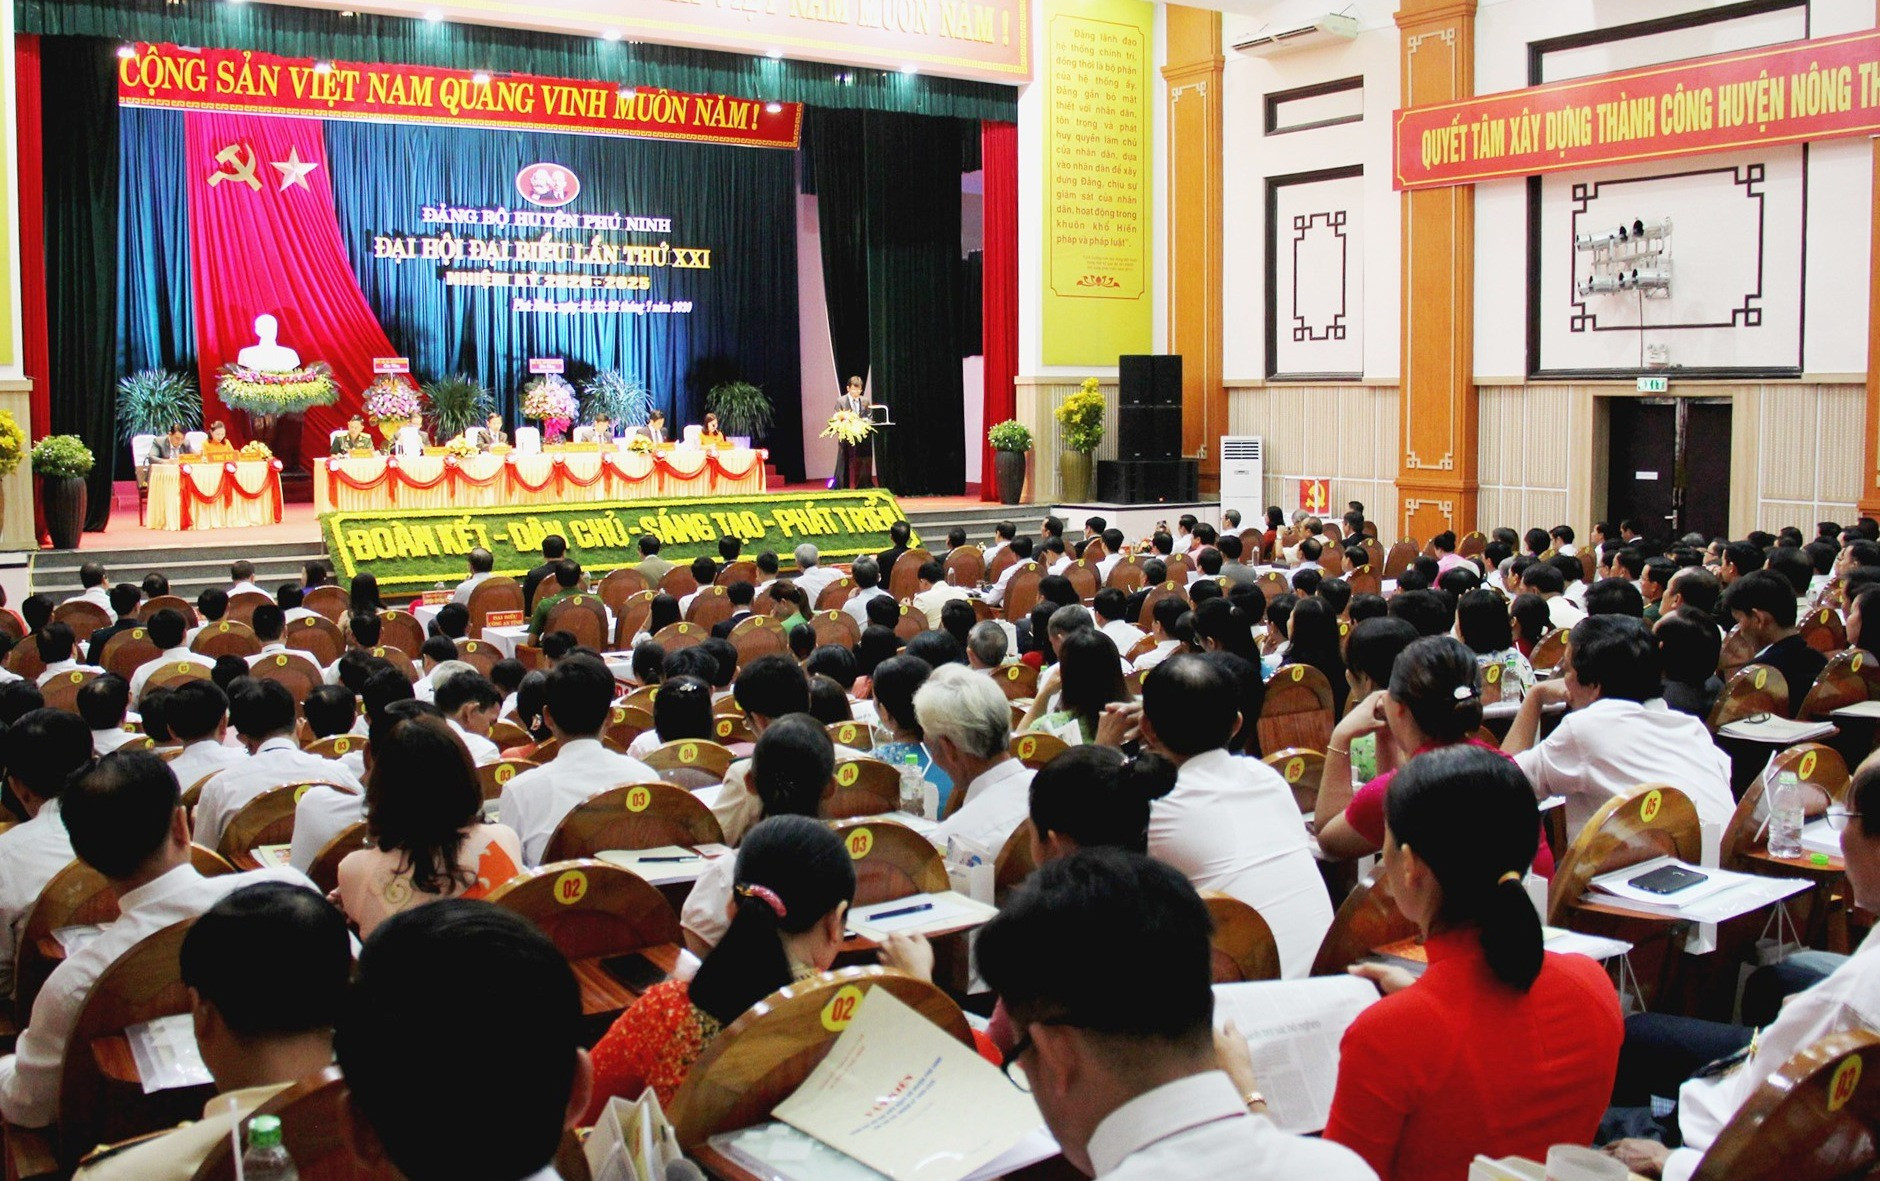 Có 279 đảng viên đại diện cho gần 3.000 đảng viên ở 56 tổ chức cơ sở đảng trực thuộc Đảng bộ huyện Phú Ninh tham dự đại hội. Ảnh: N.V